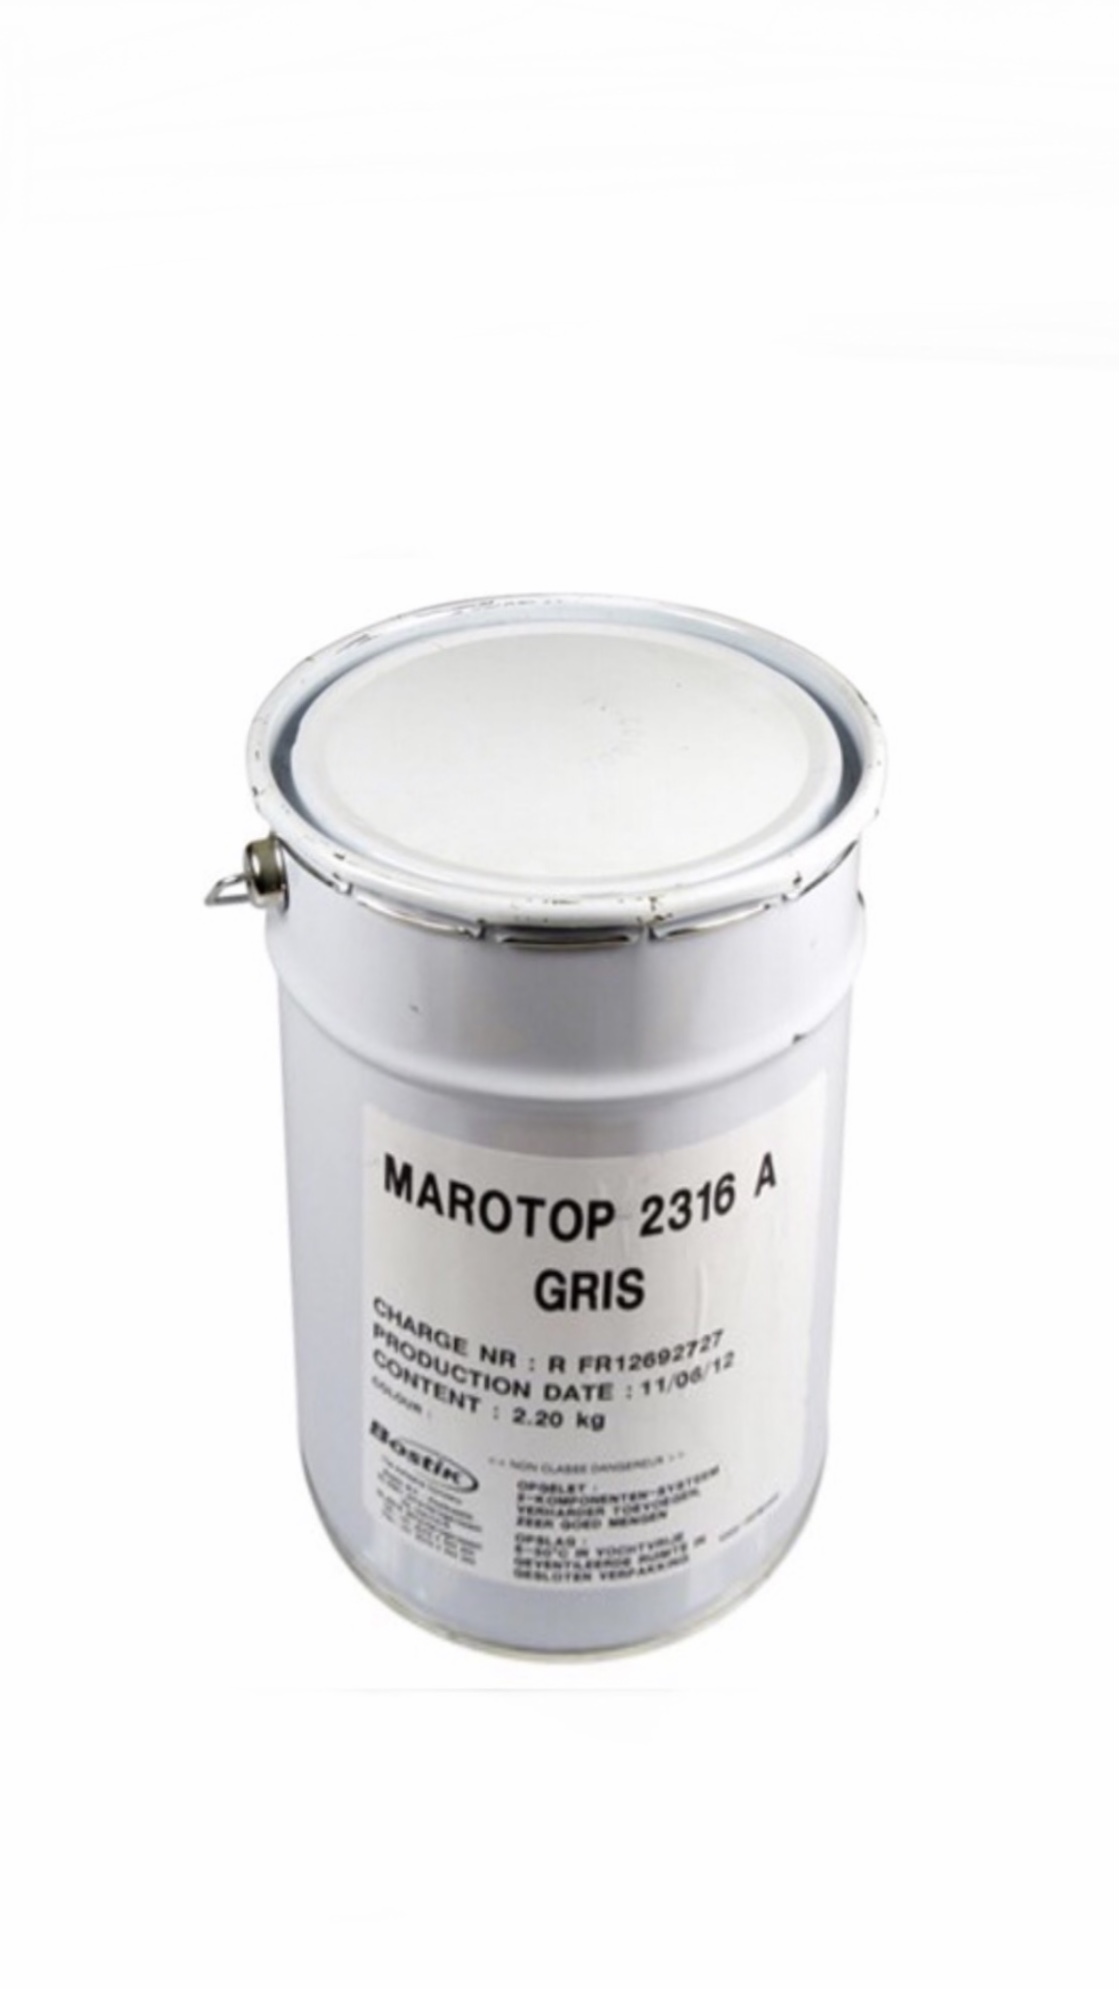 Simson Marotop 2316A grijs 2,2 kg met 1,17 kg verharder voor het fixeren van Simson Mandurax